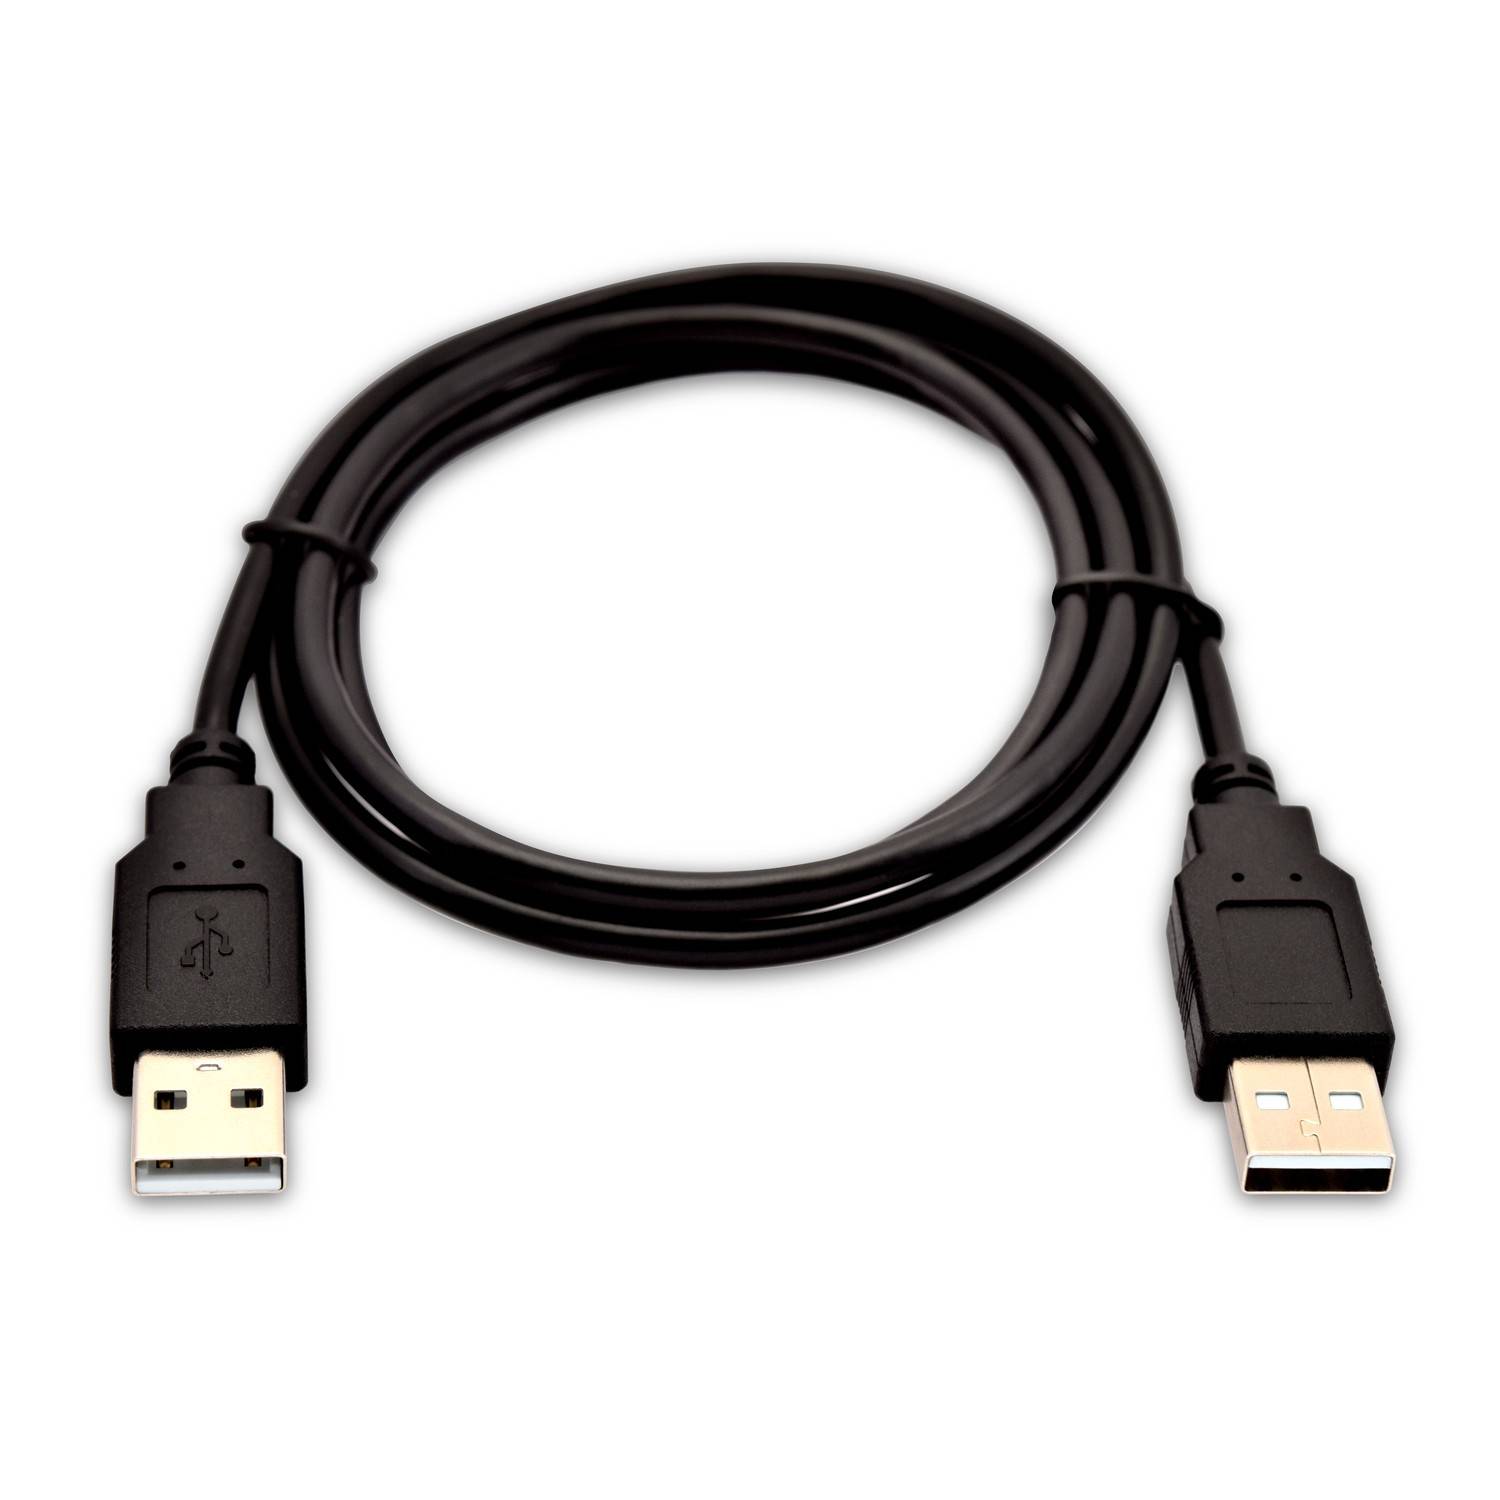 Rca Informatique - image du produit : USB2.0 A 480MBPS 2M 6.6FT CABLE DATA TRANSFER CABLE USBA 480MBPS